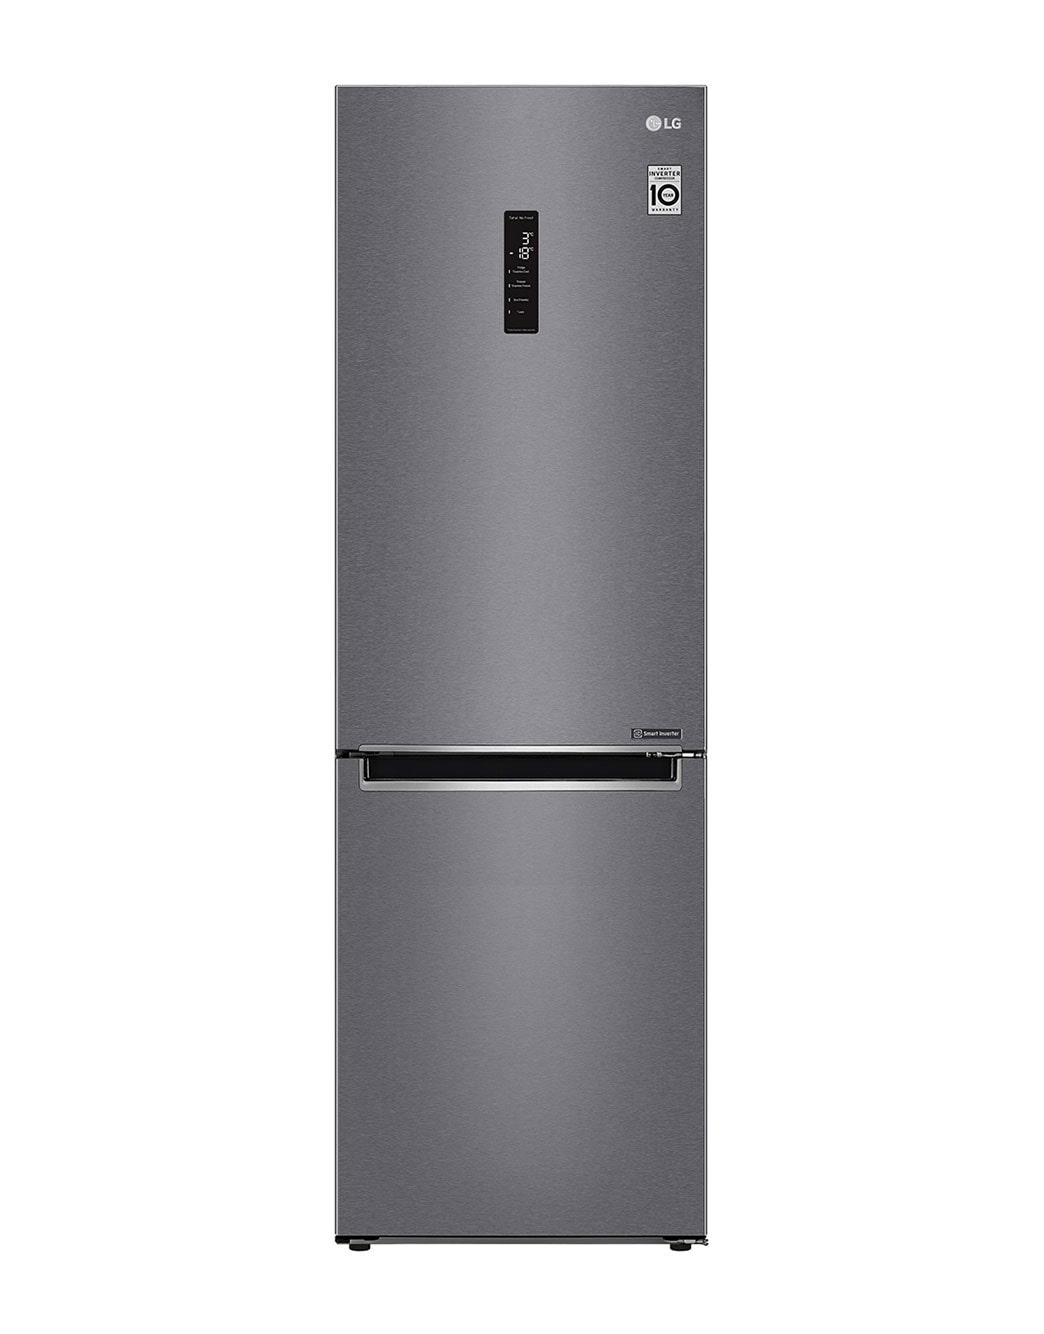 Можно ли фильтр для воды ставить в холодильник